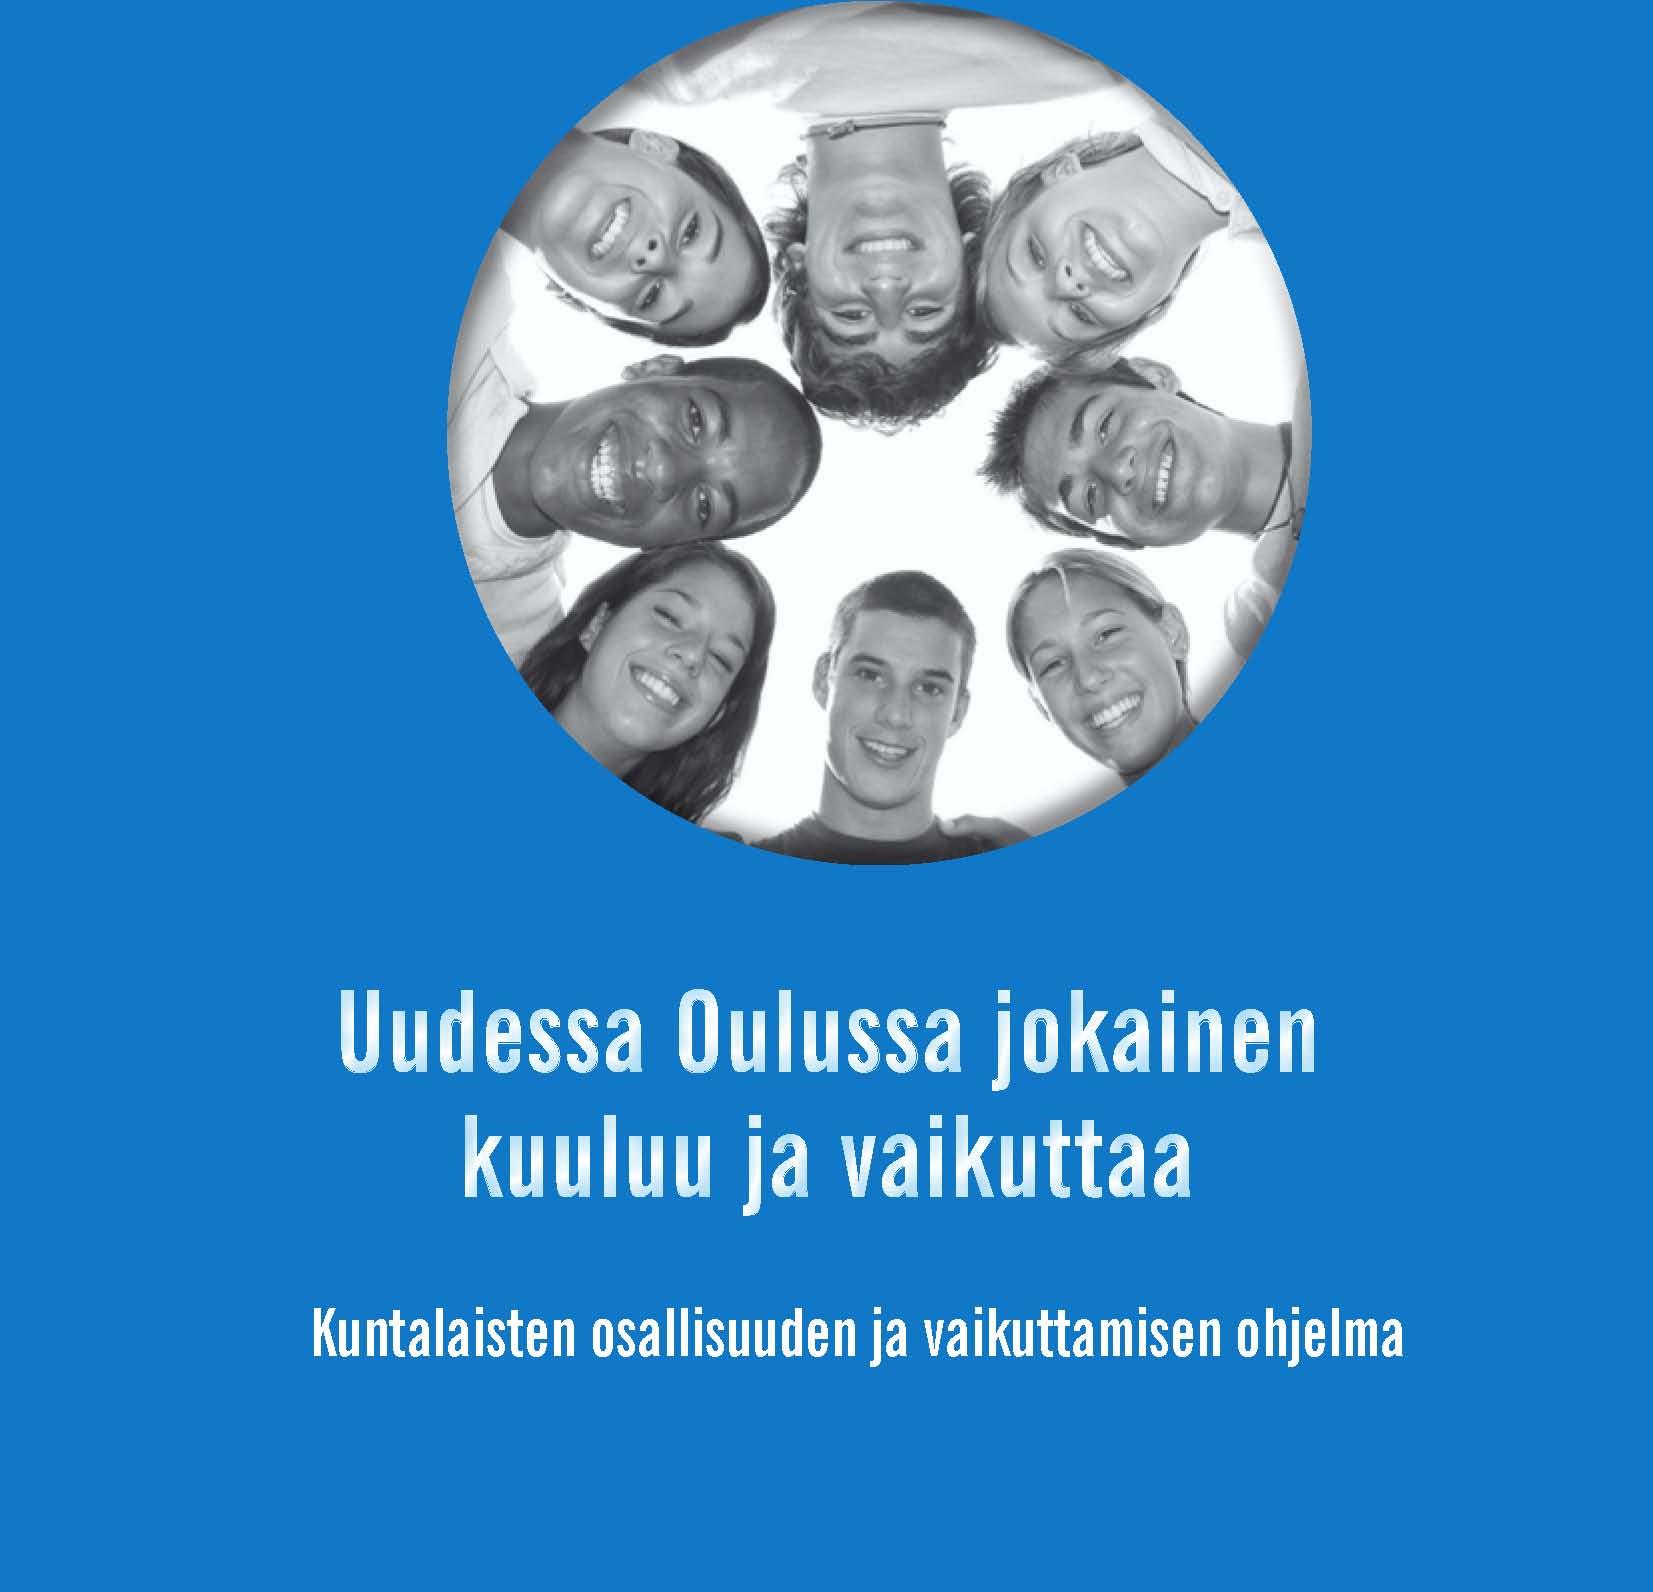 R Taustaa Esitys pohjautuu Seppo Määtän yhteenvetoon Oulun tapa toimia toimintamallityössä käsitellyistä 11 teemasta.